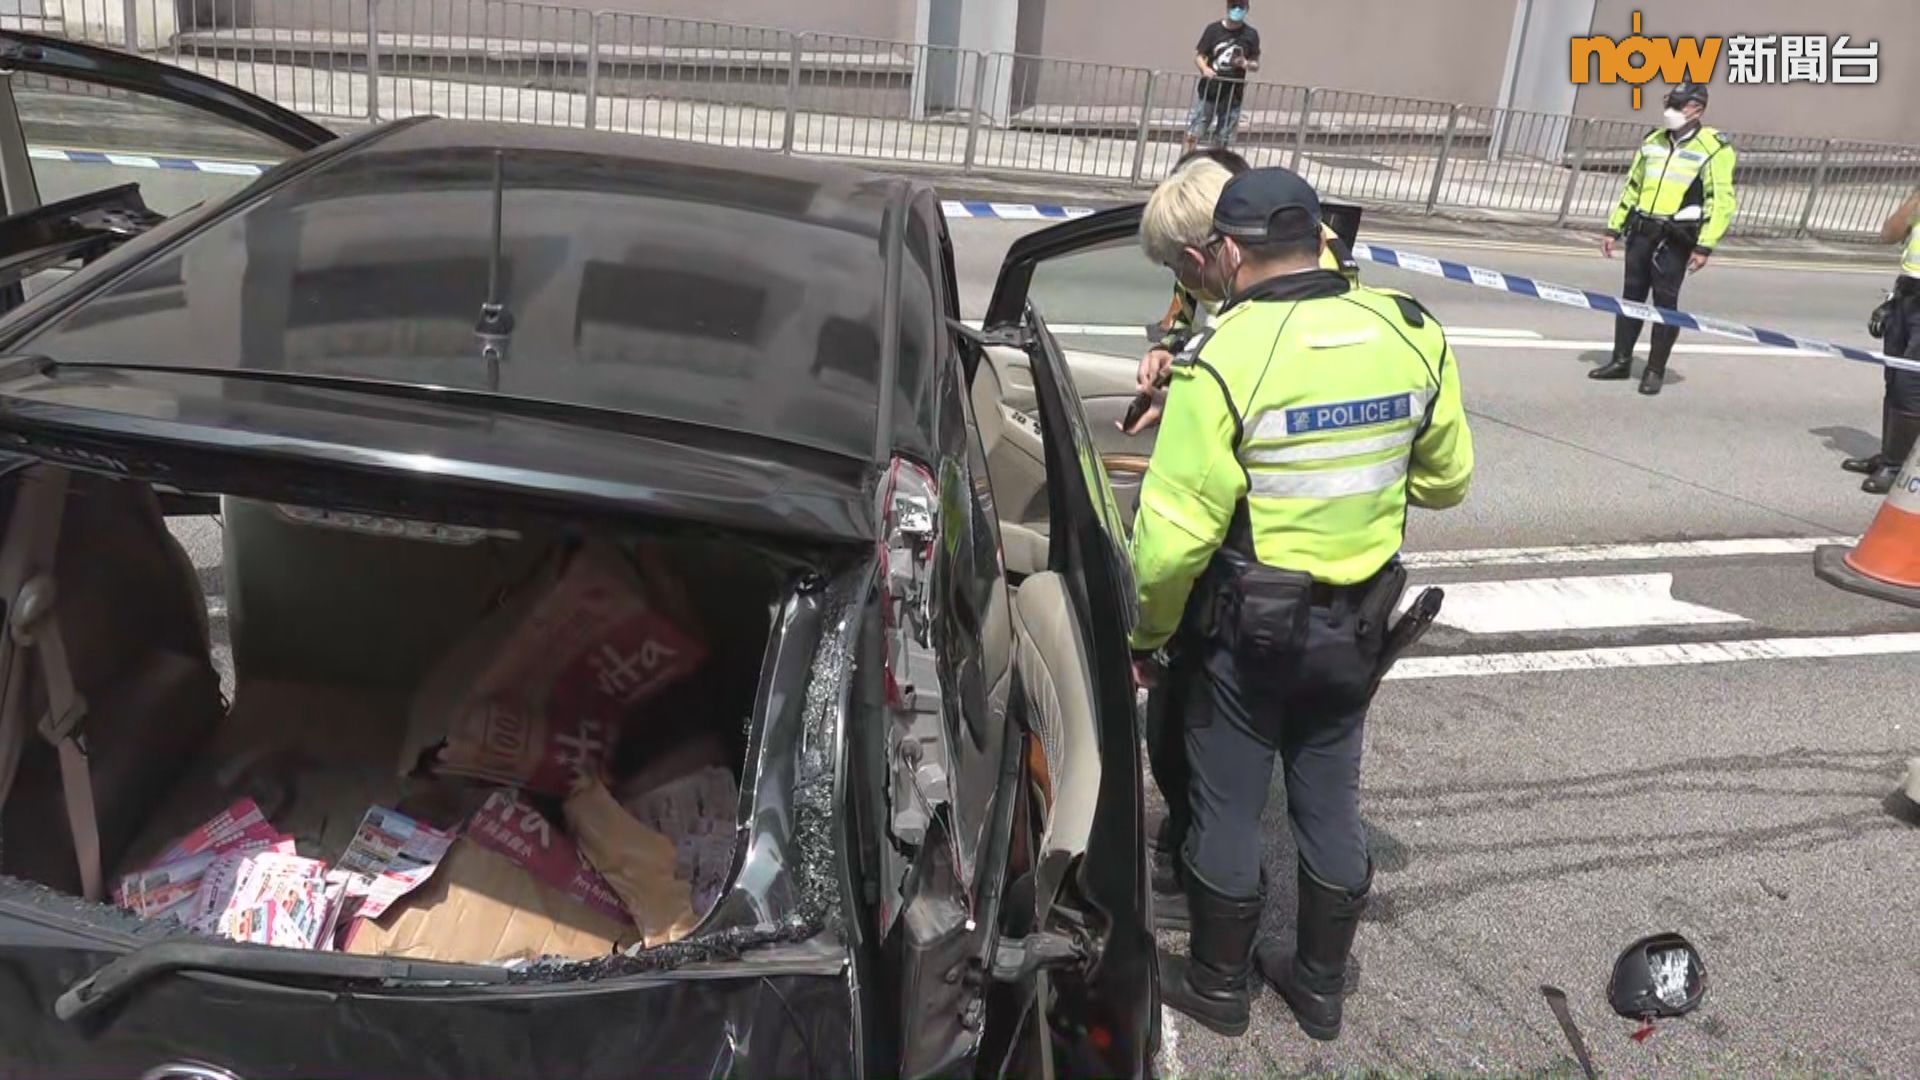 葵涌七人車逃避警方追截撞的士後翻側五人被捕